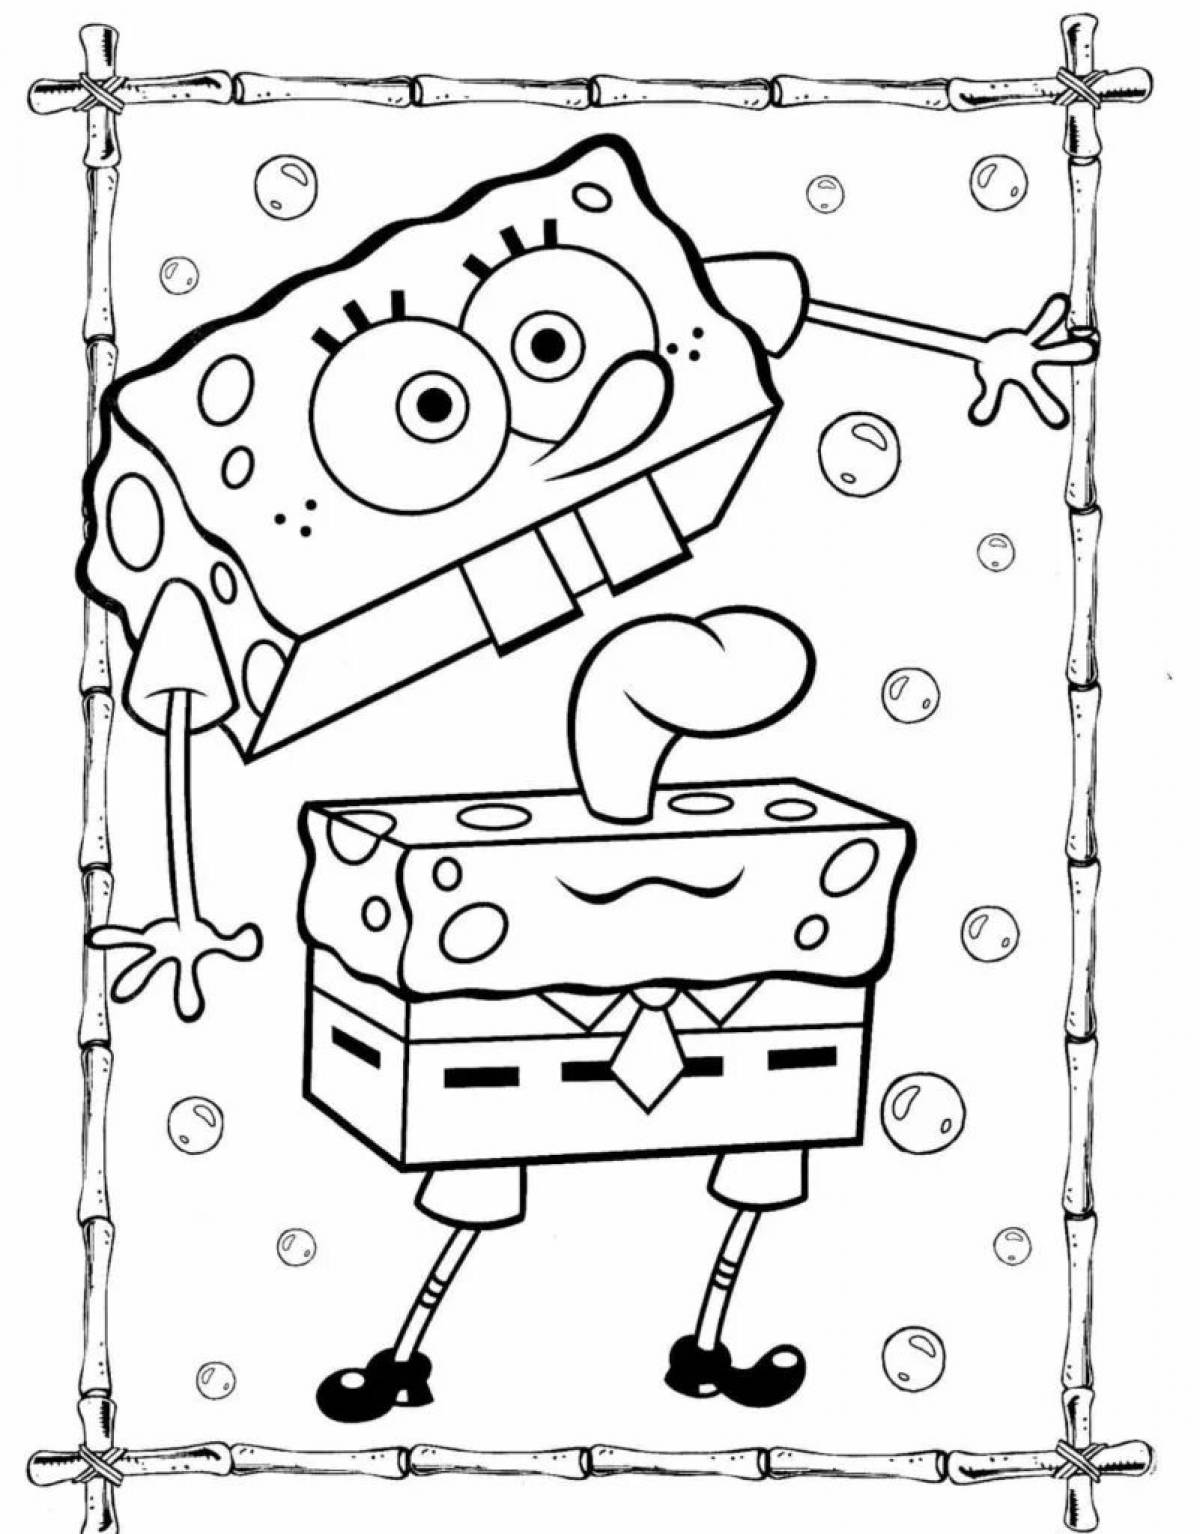 Spongebob pattern #7